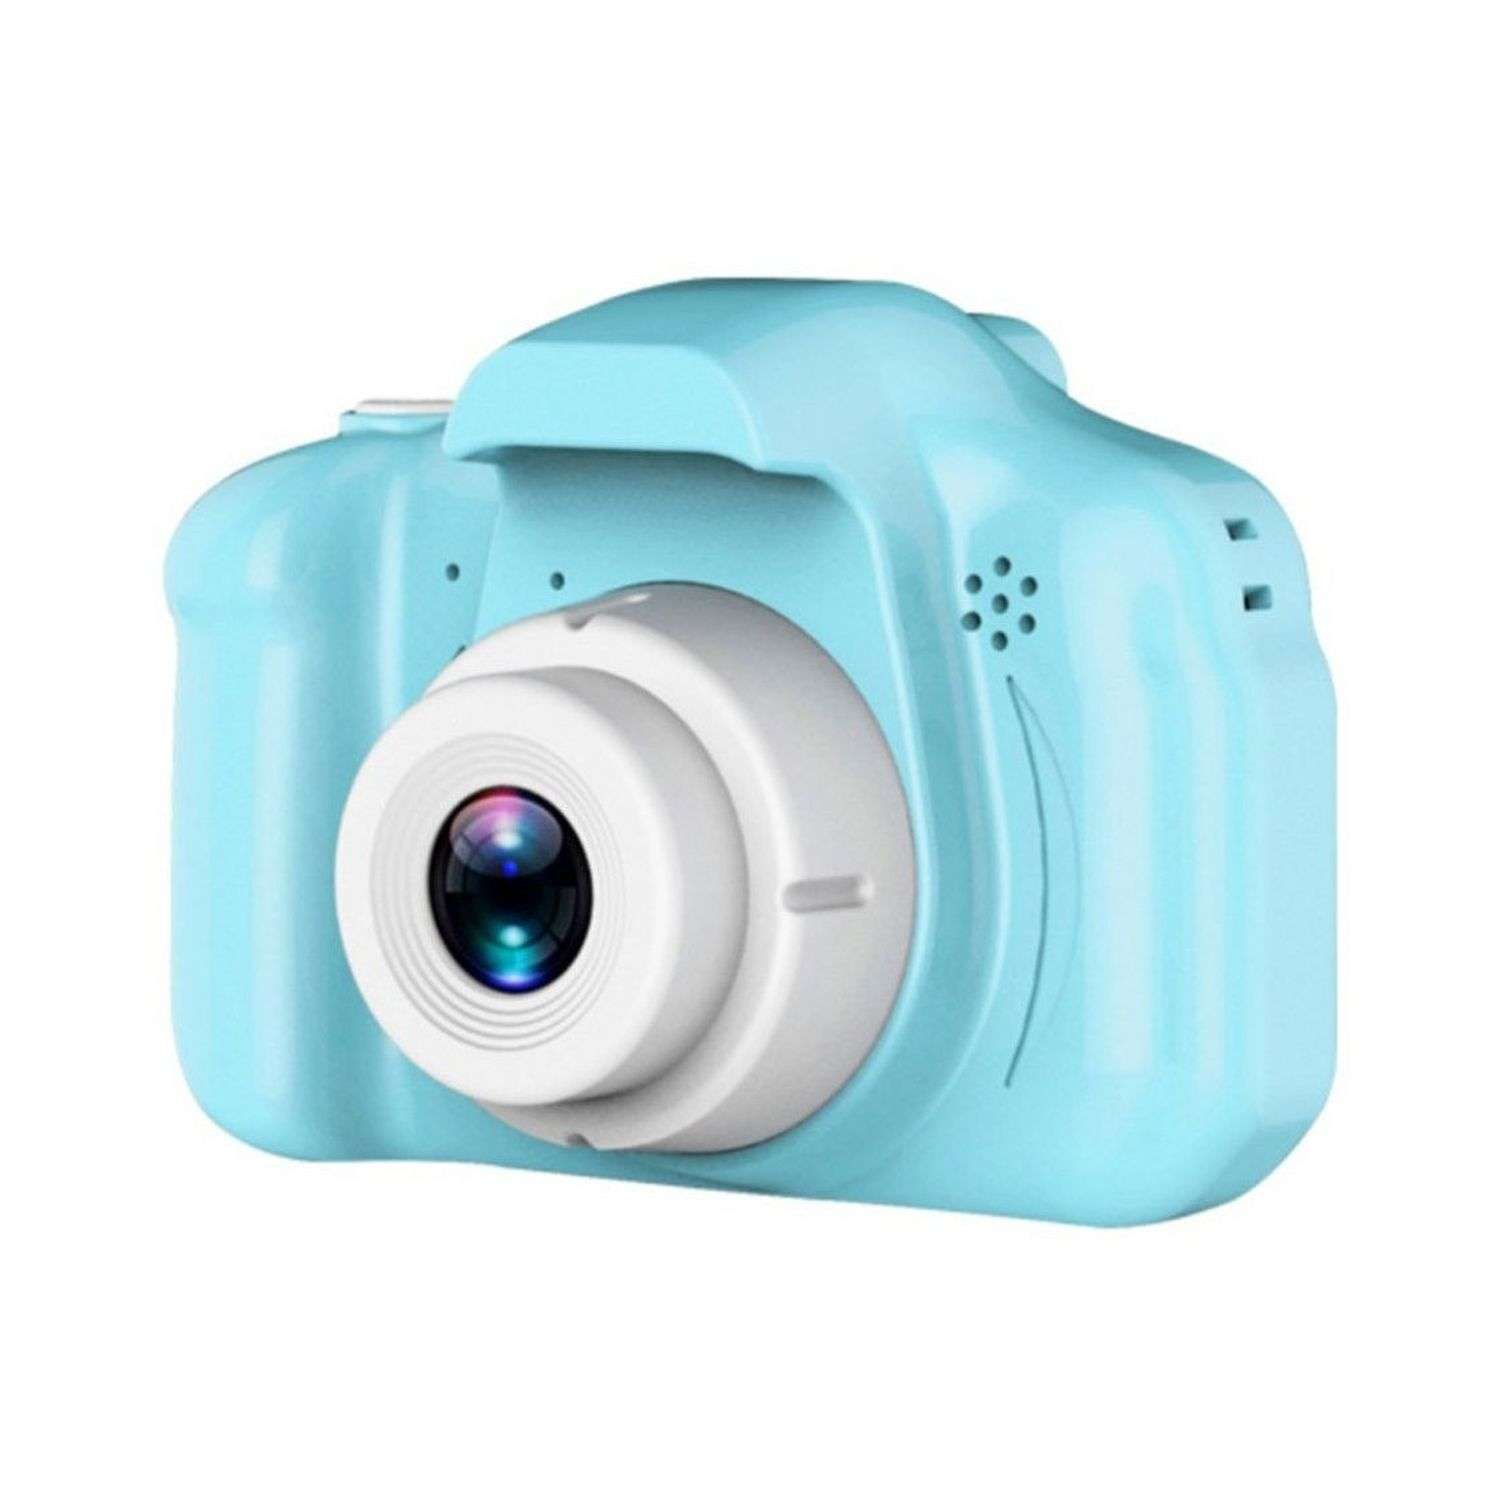 Фотоаппарат Uniglodis детский голубой - фото 1